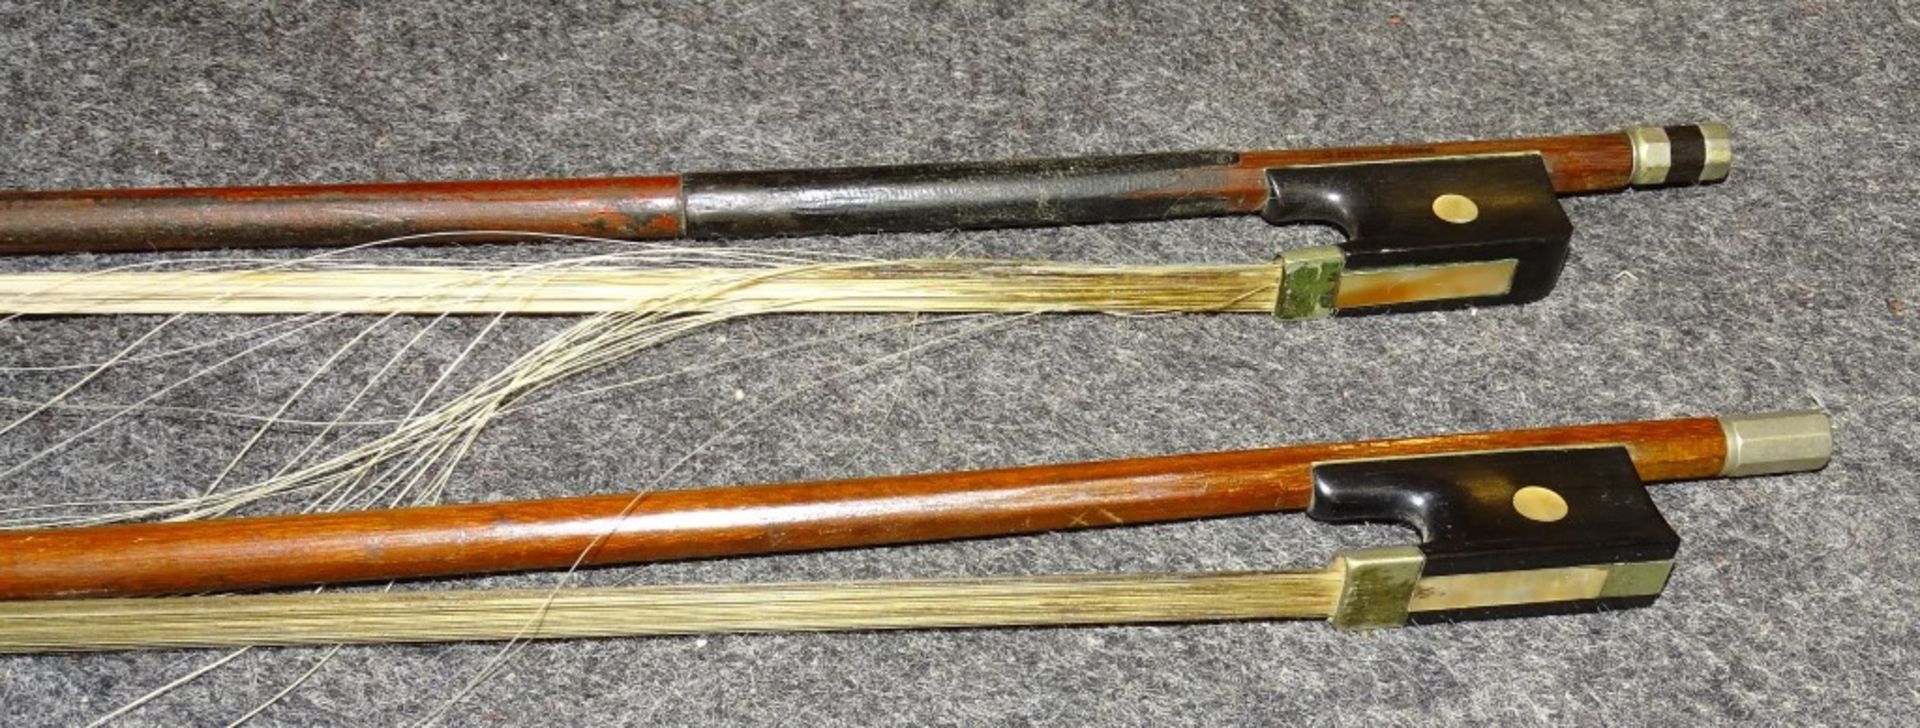 Geige- Hornsteiner Mittenwald 1882,Etikett in Geigen Korpus,sog.Löwenkopf Geige,anbei 2 Bögen,1x - Bild 9 aus 10